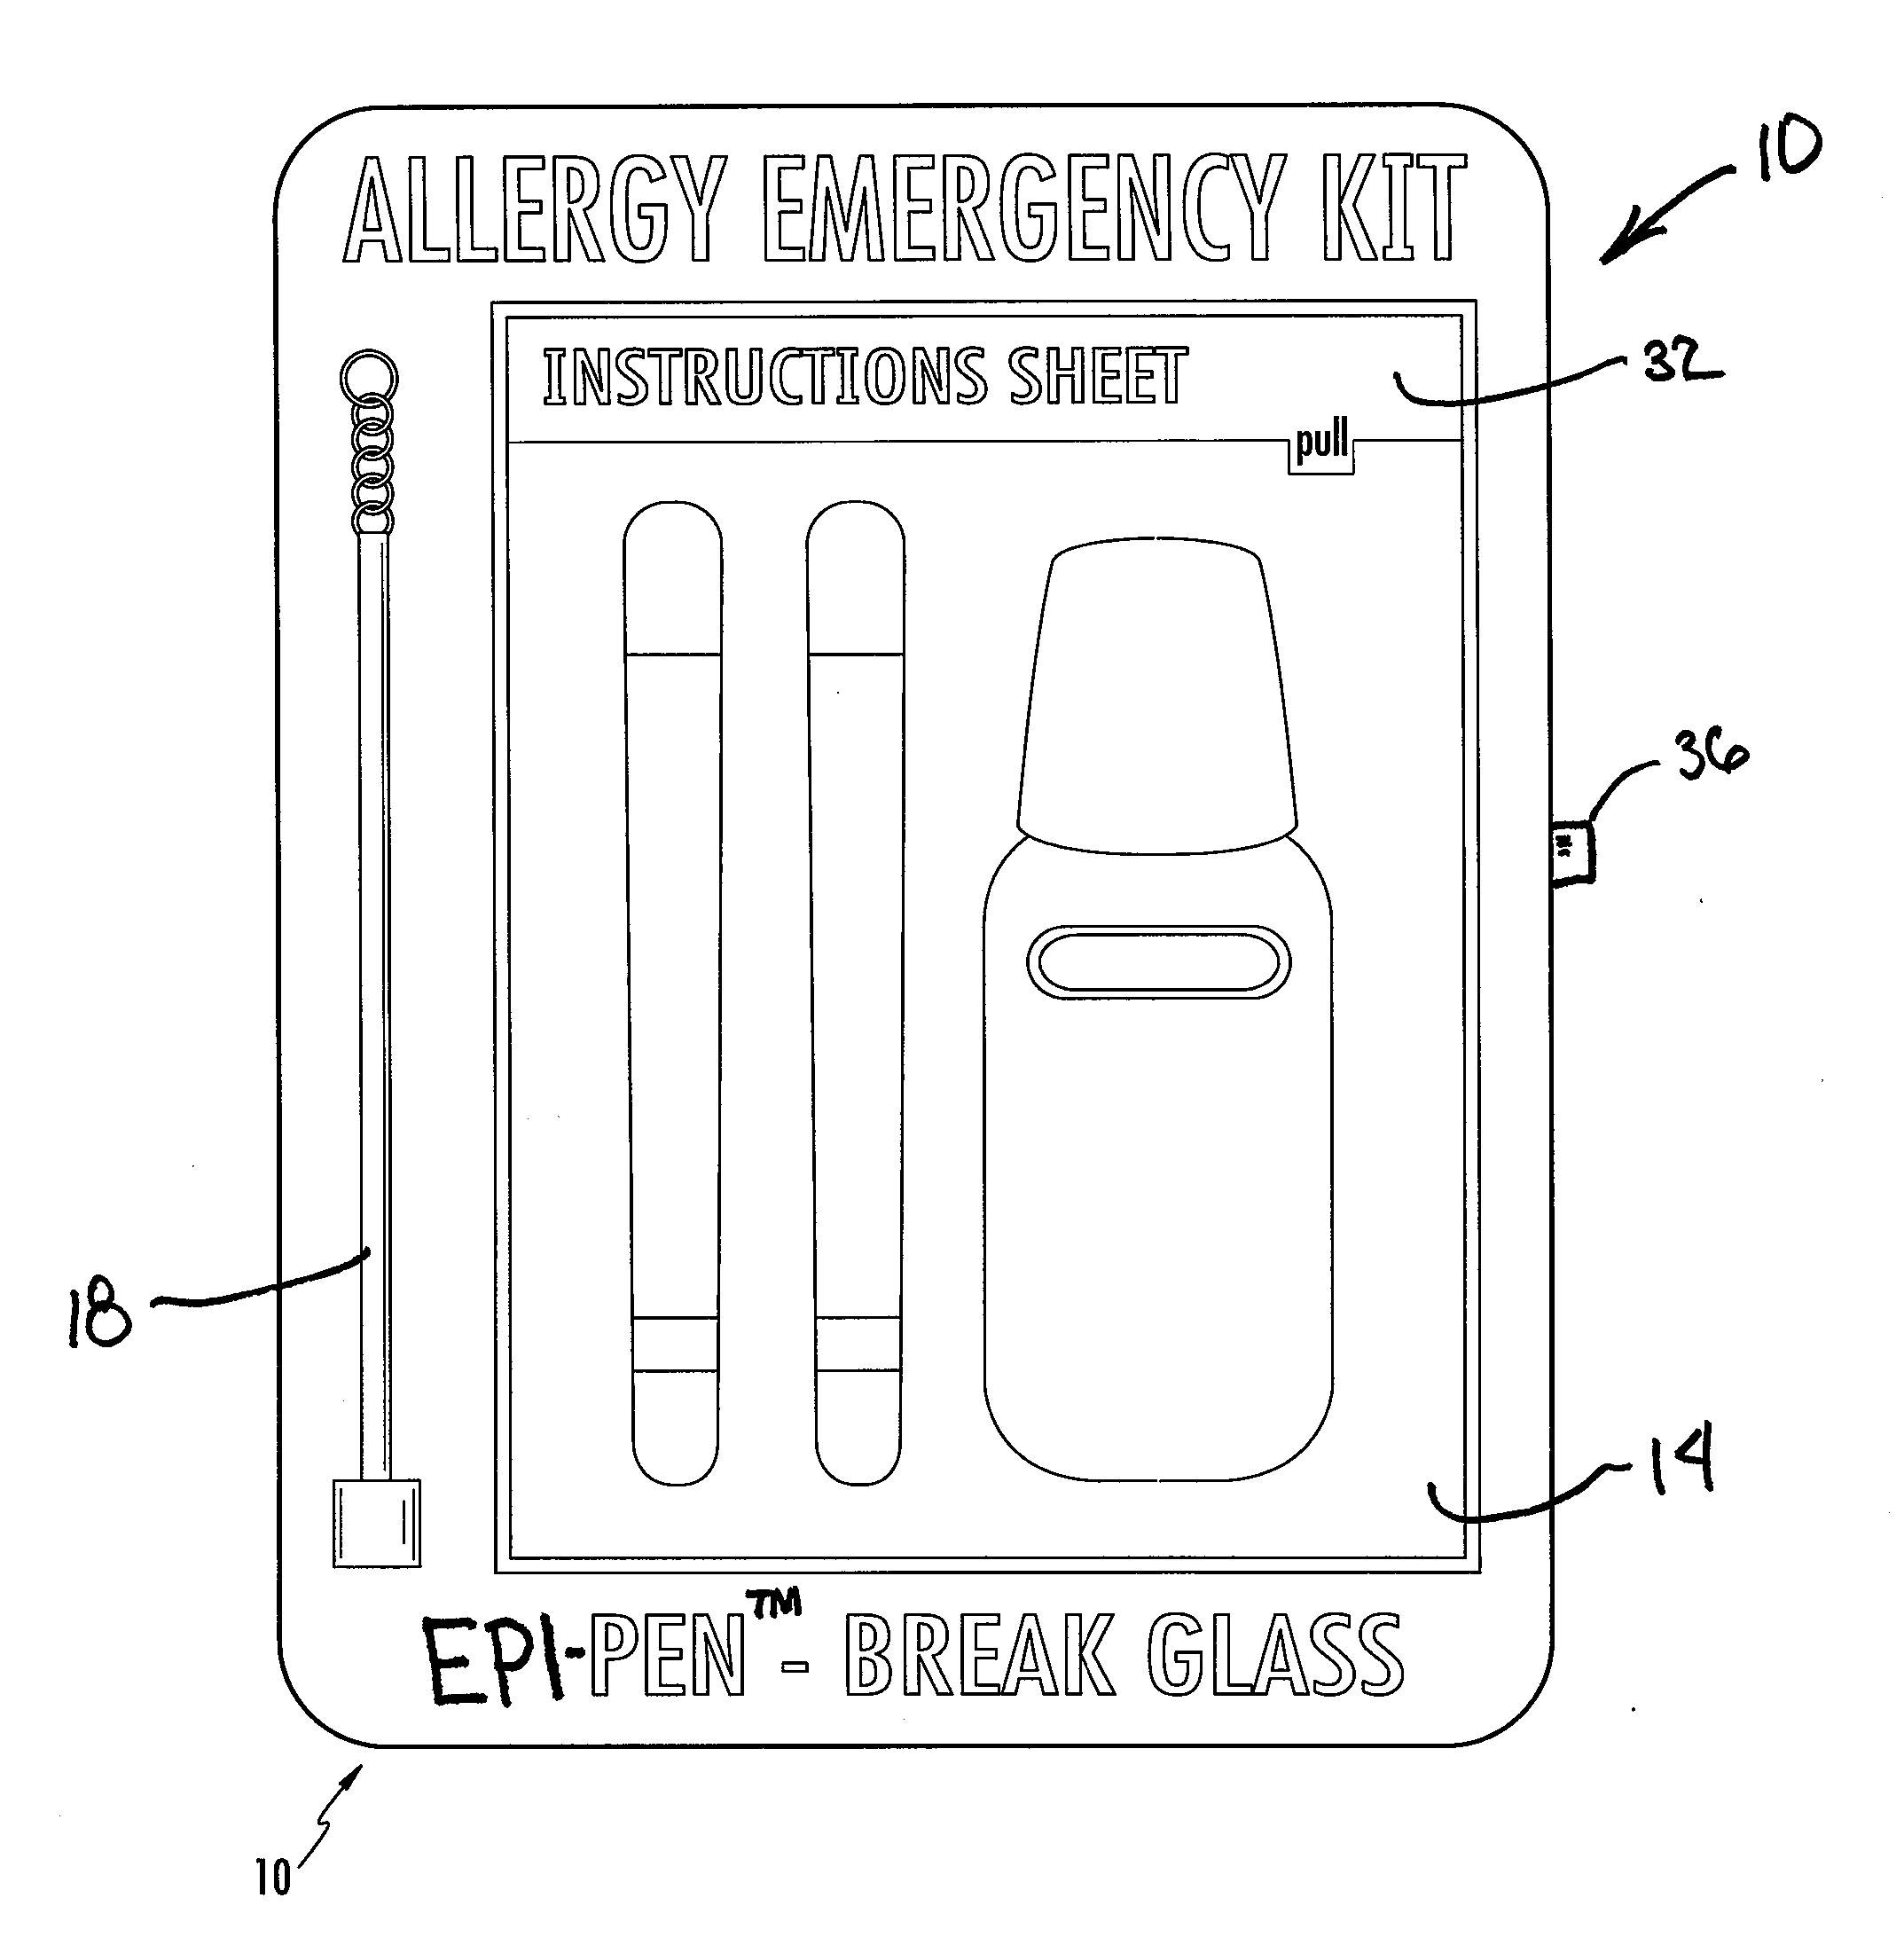 Allergy emergency kit